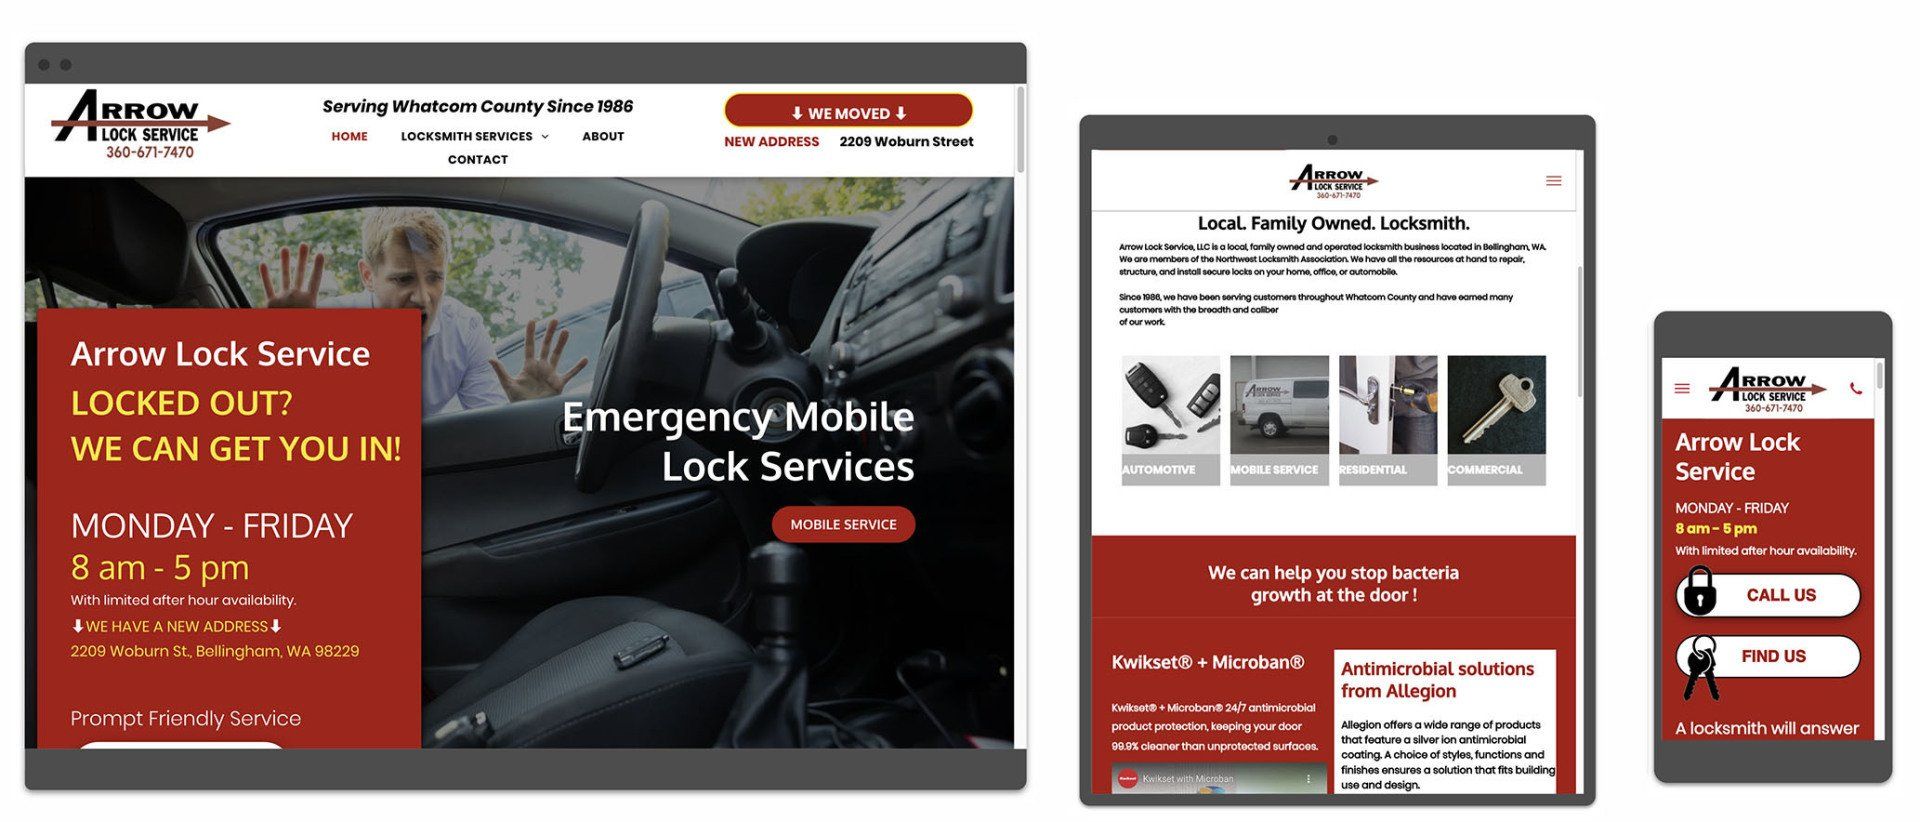 Arrow Lock Service  website image